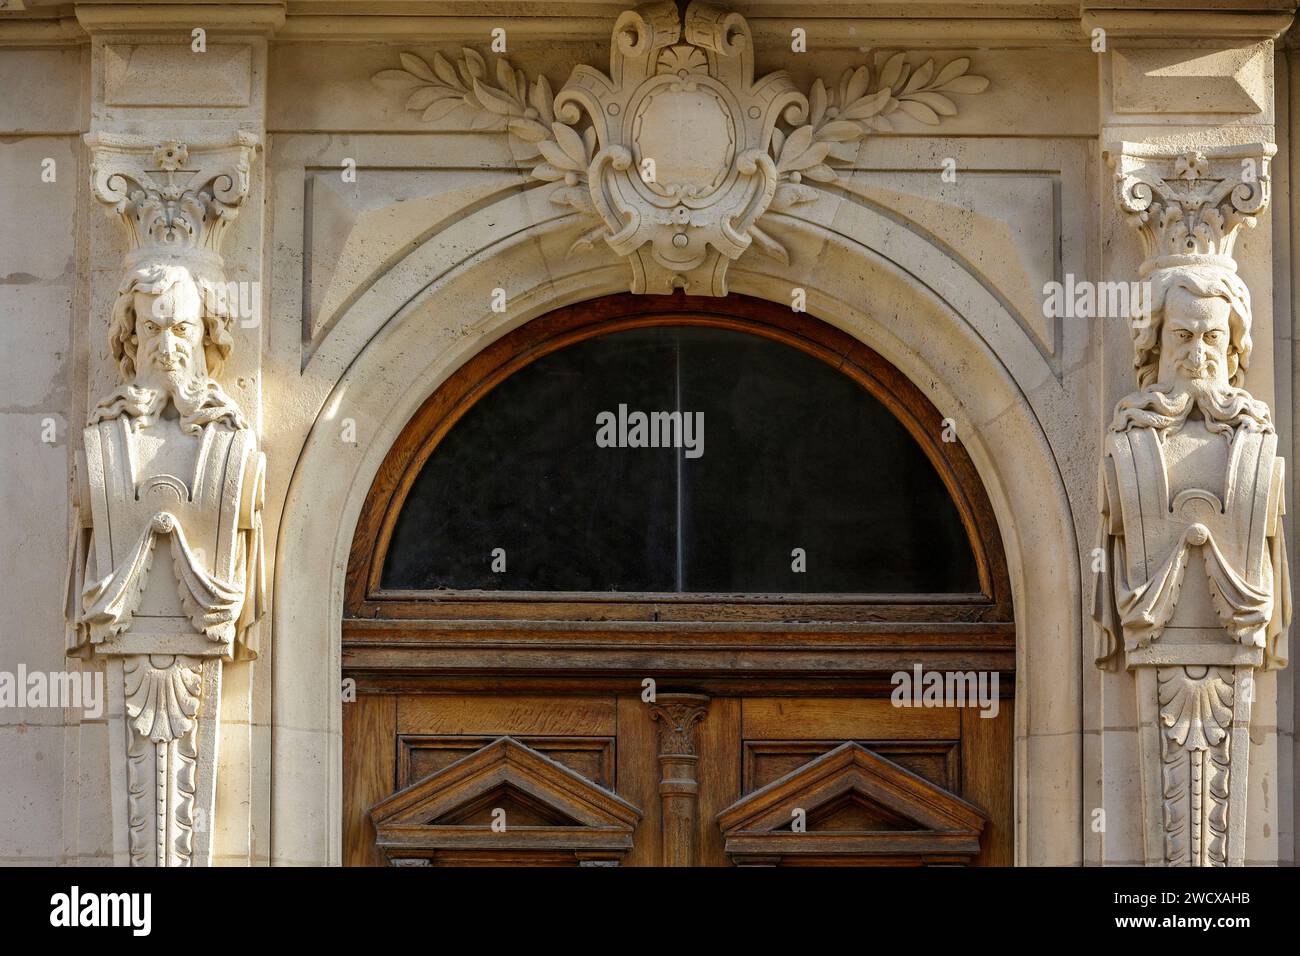 Frankreich, Meurthe et Moselle, Detail der Tür und der Skulpturen, die Menschen an der Fassade eines bürgerlichen Apartmentgebäudes im neoklassizistischen Stil in der Rue Lyautey darstellen Stockfoto